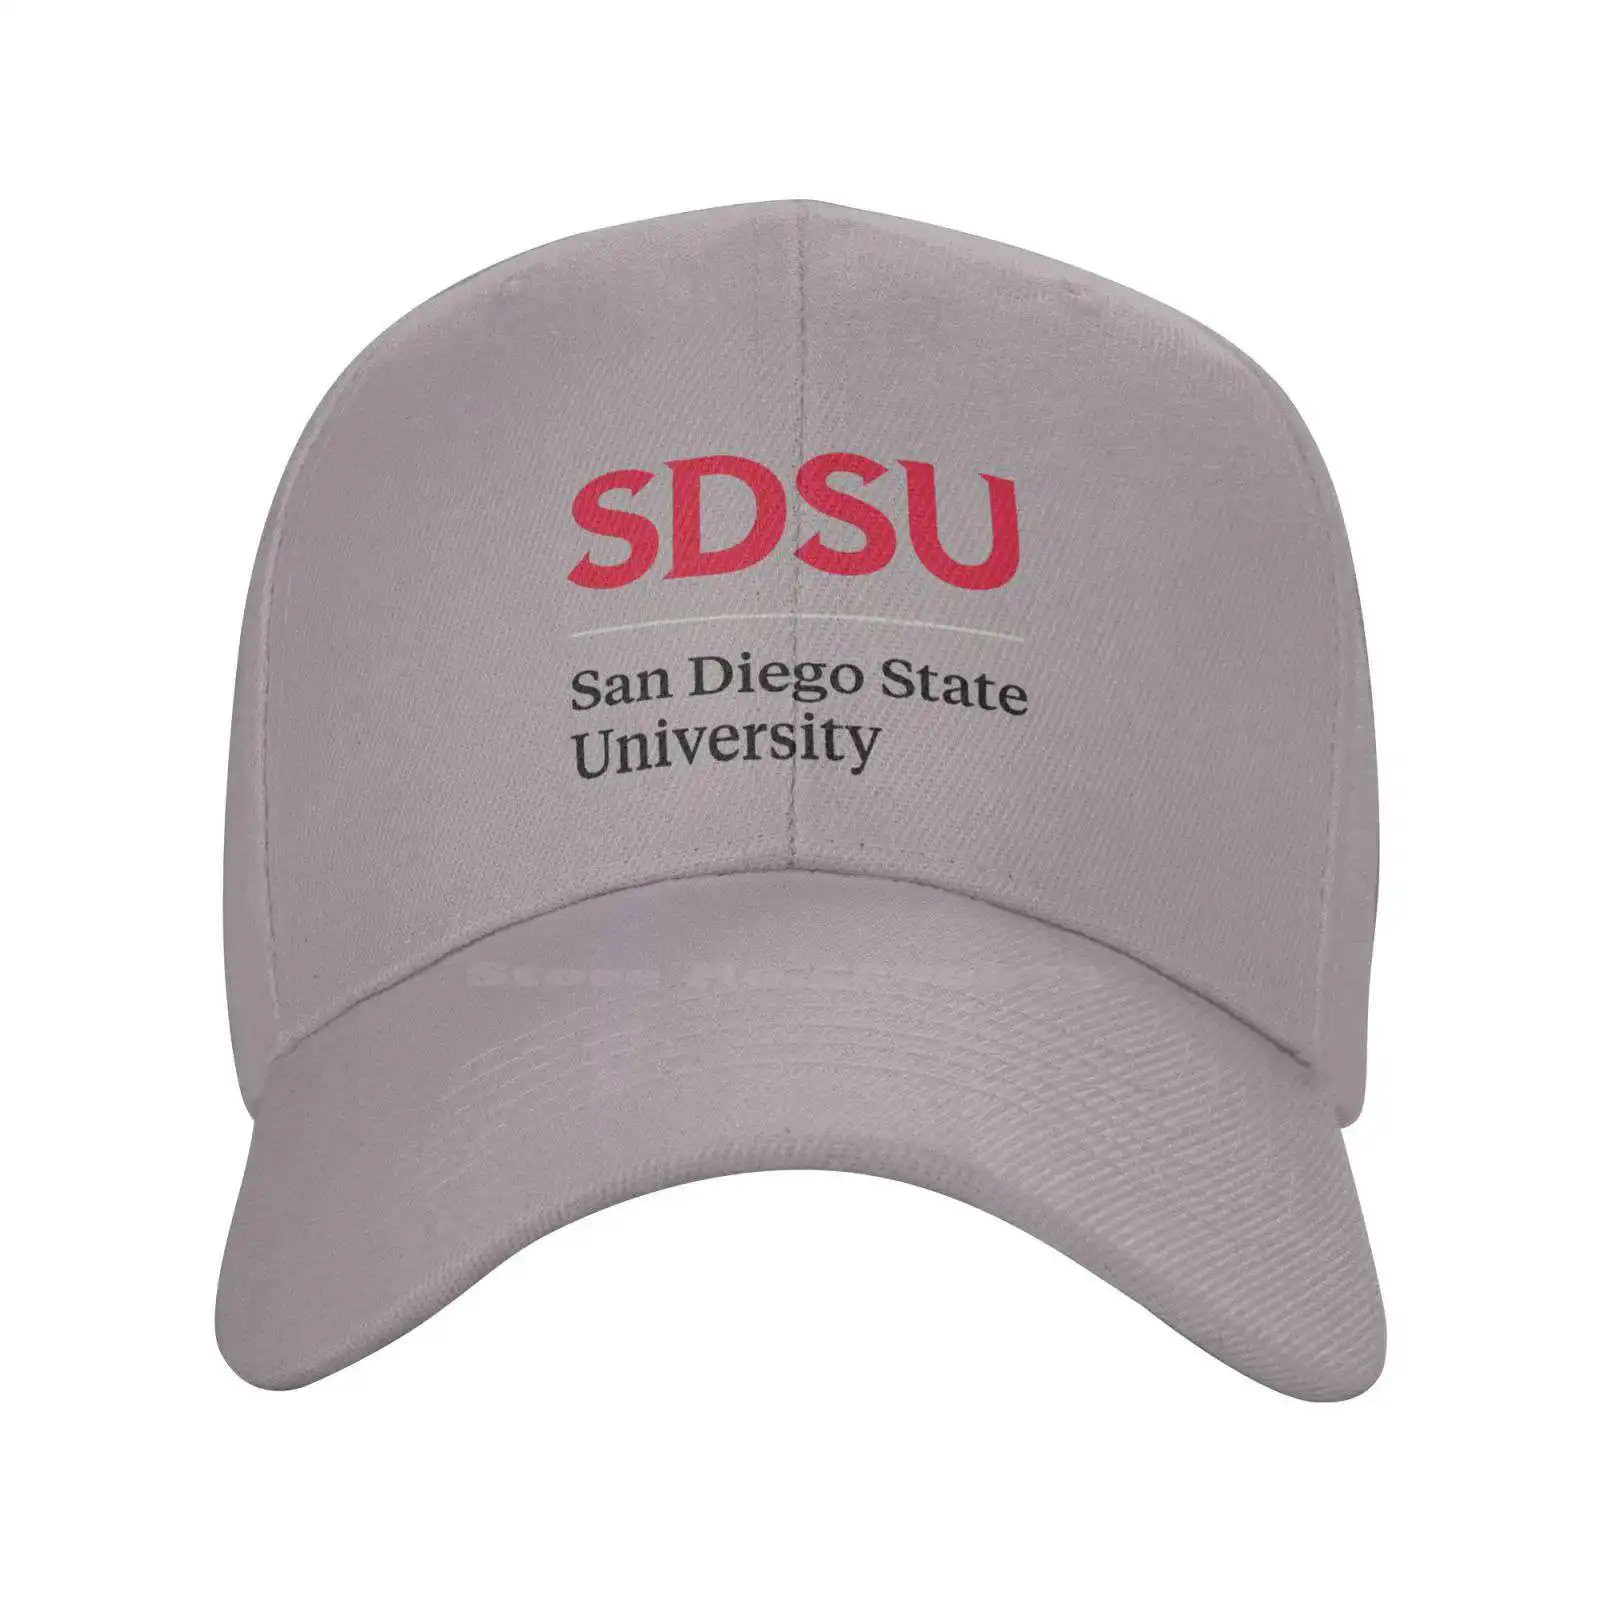 Логотип Государственного университета Сан-Диего, графический логотип бренда, высококачественная джинсовая кепка, вязаная шапка, бейсболка